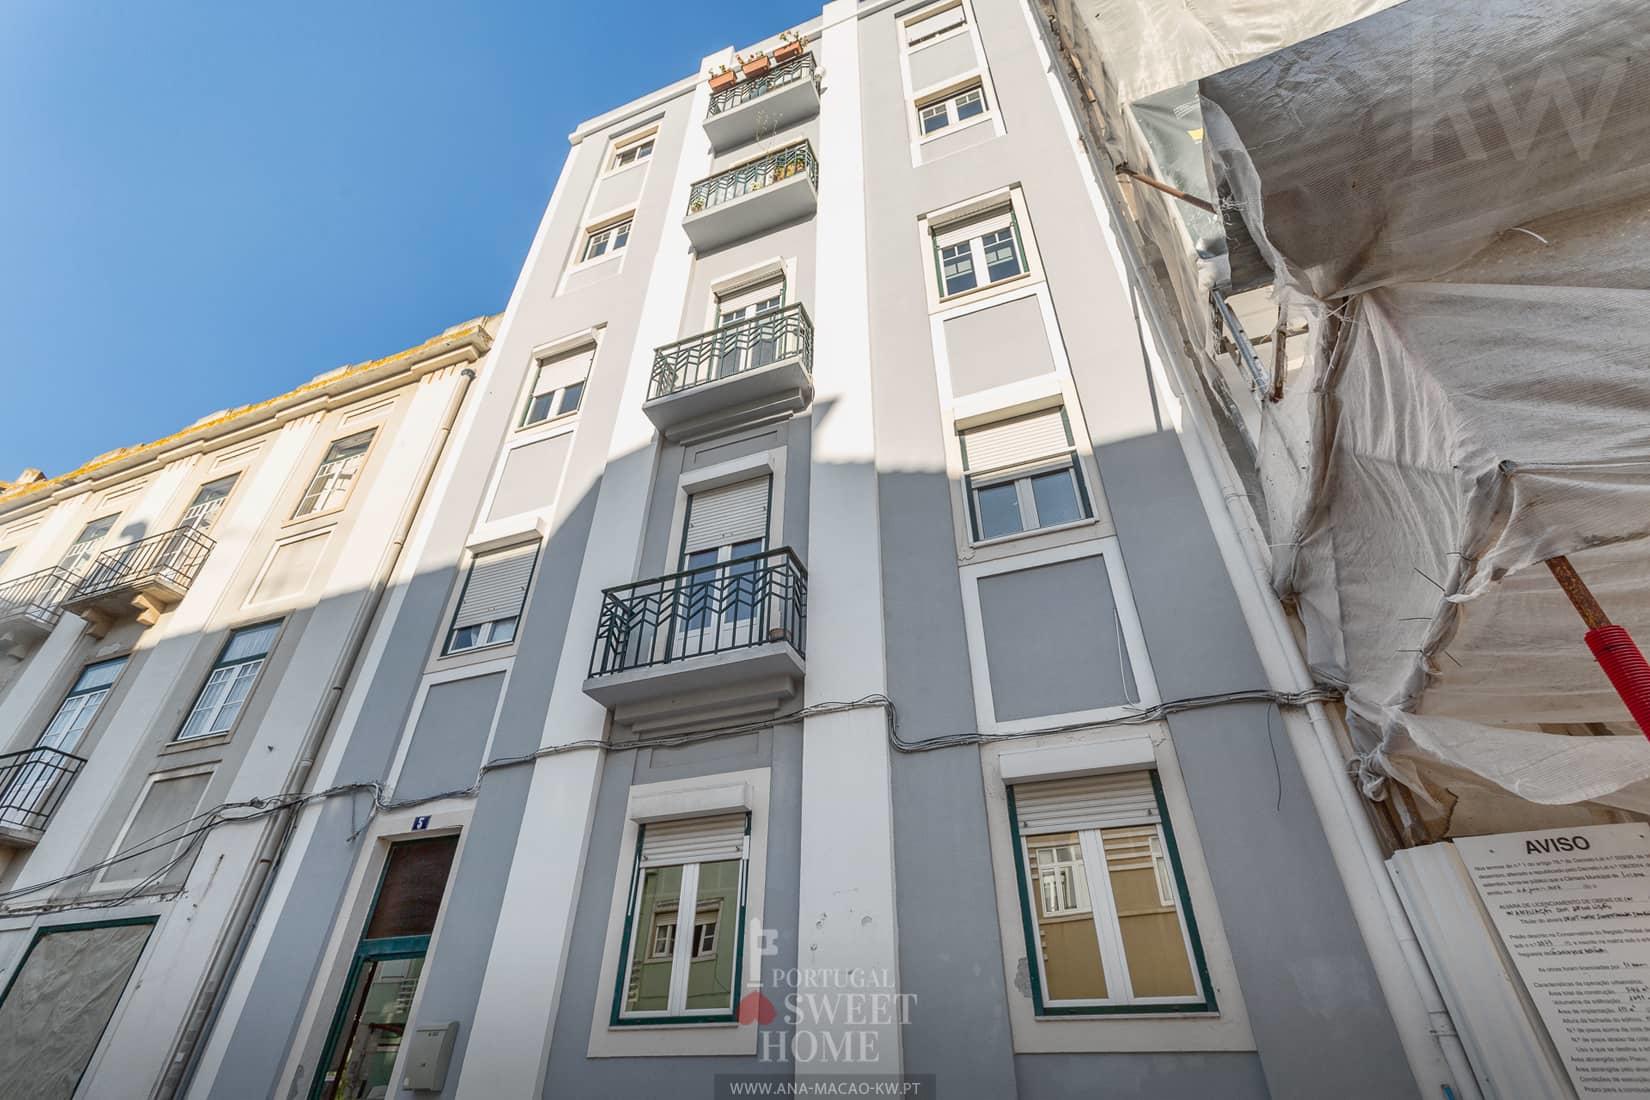 Lisbonne, Sete Rios - Appartement de 3+1 chambres entièrement rénové, à vendre